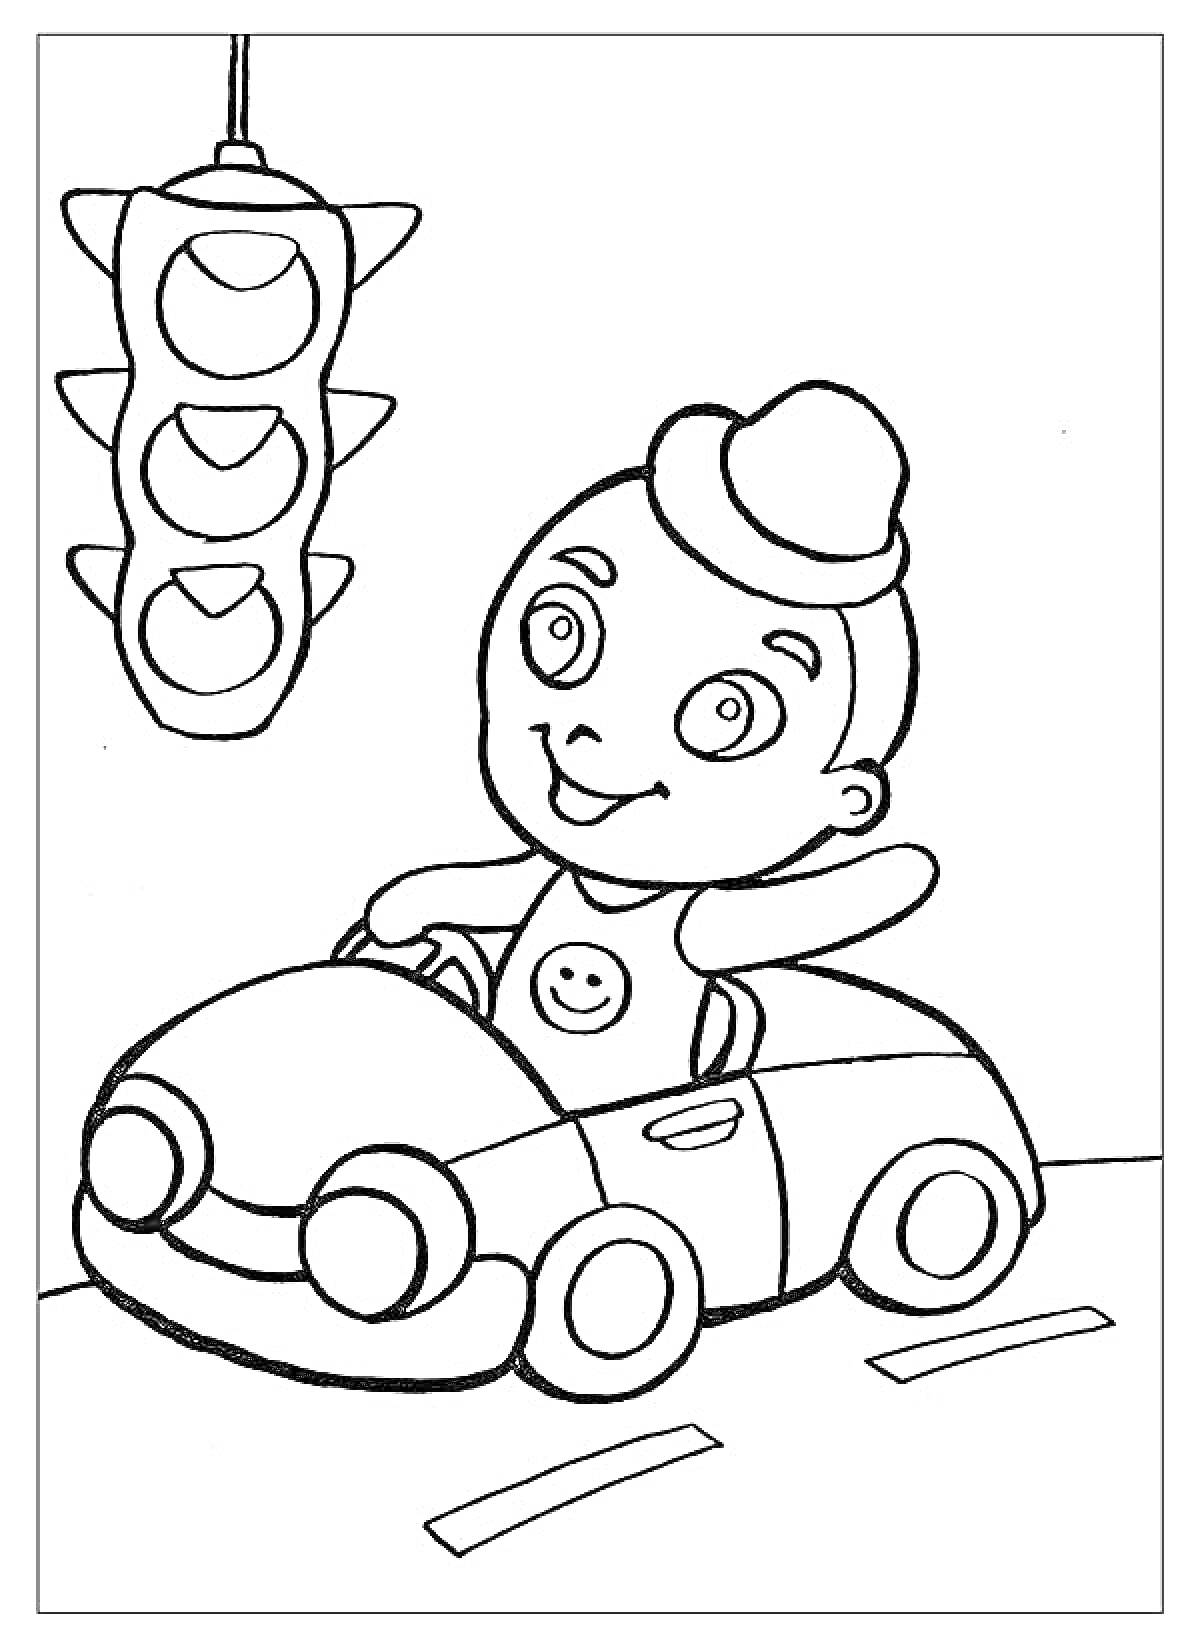 Ребенок в автомобильчике на дороге под светофором